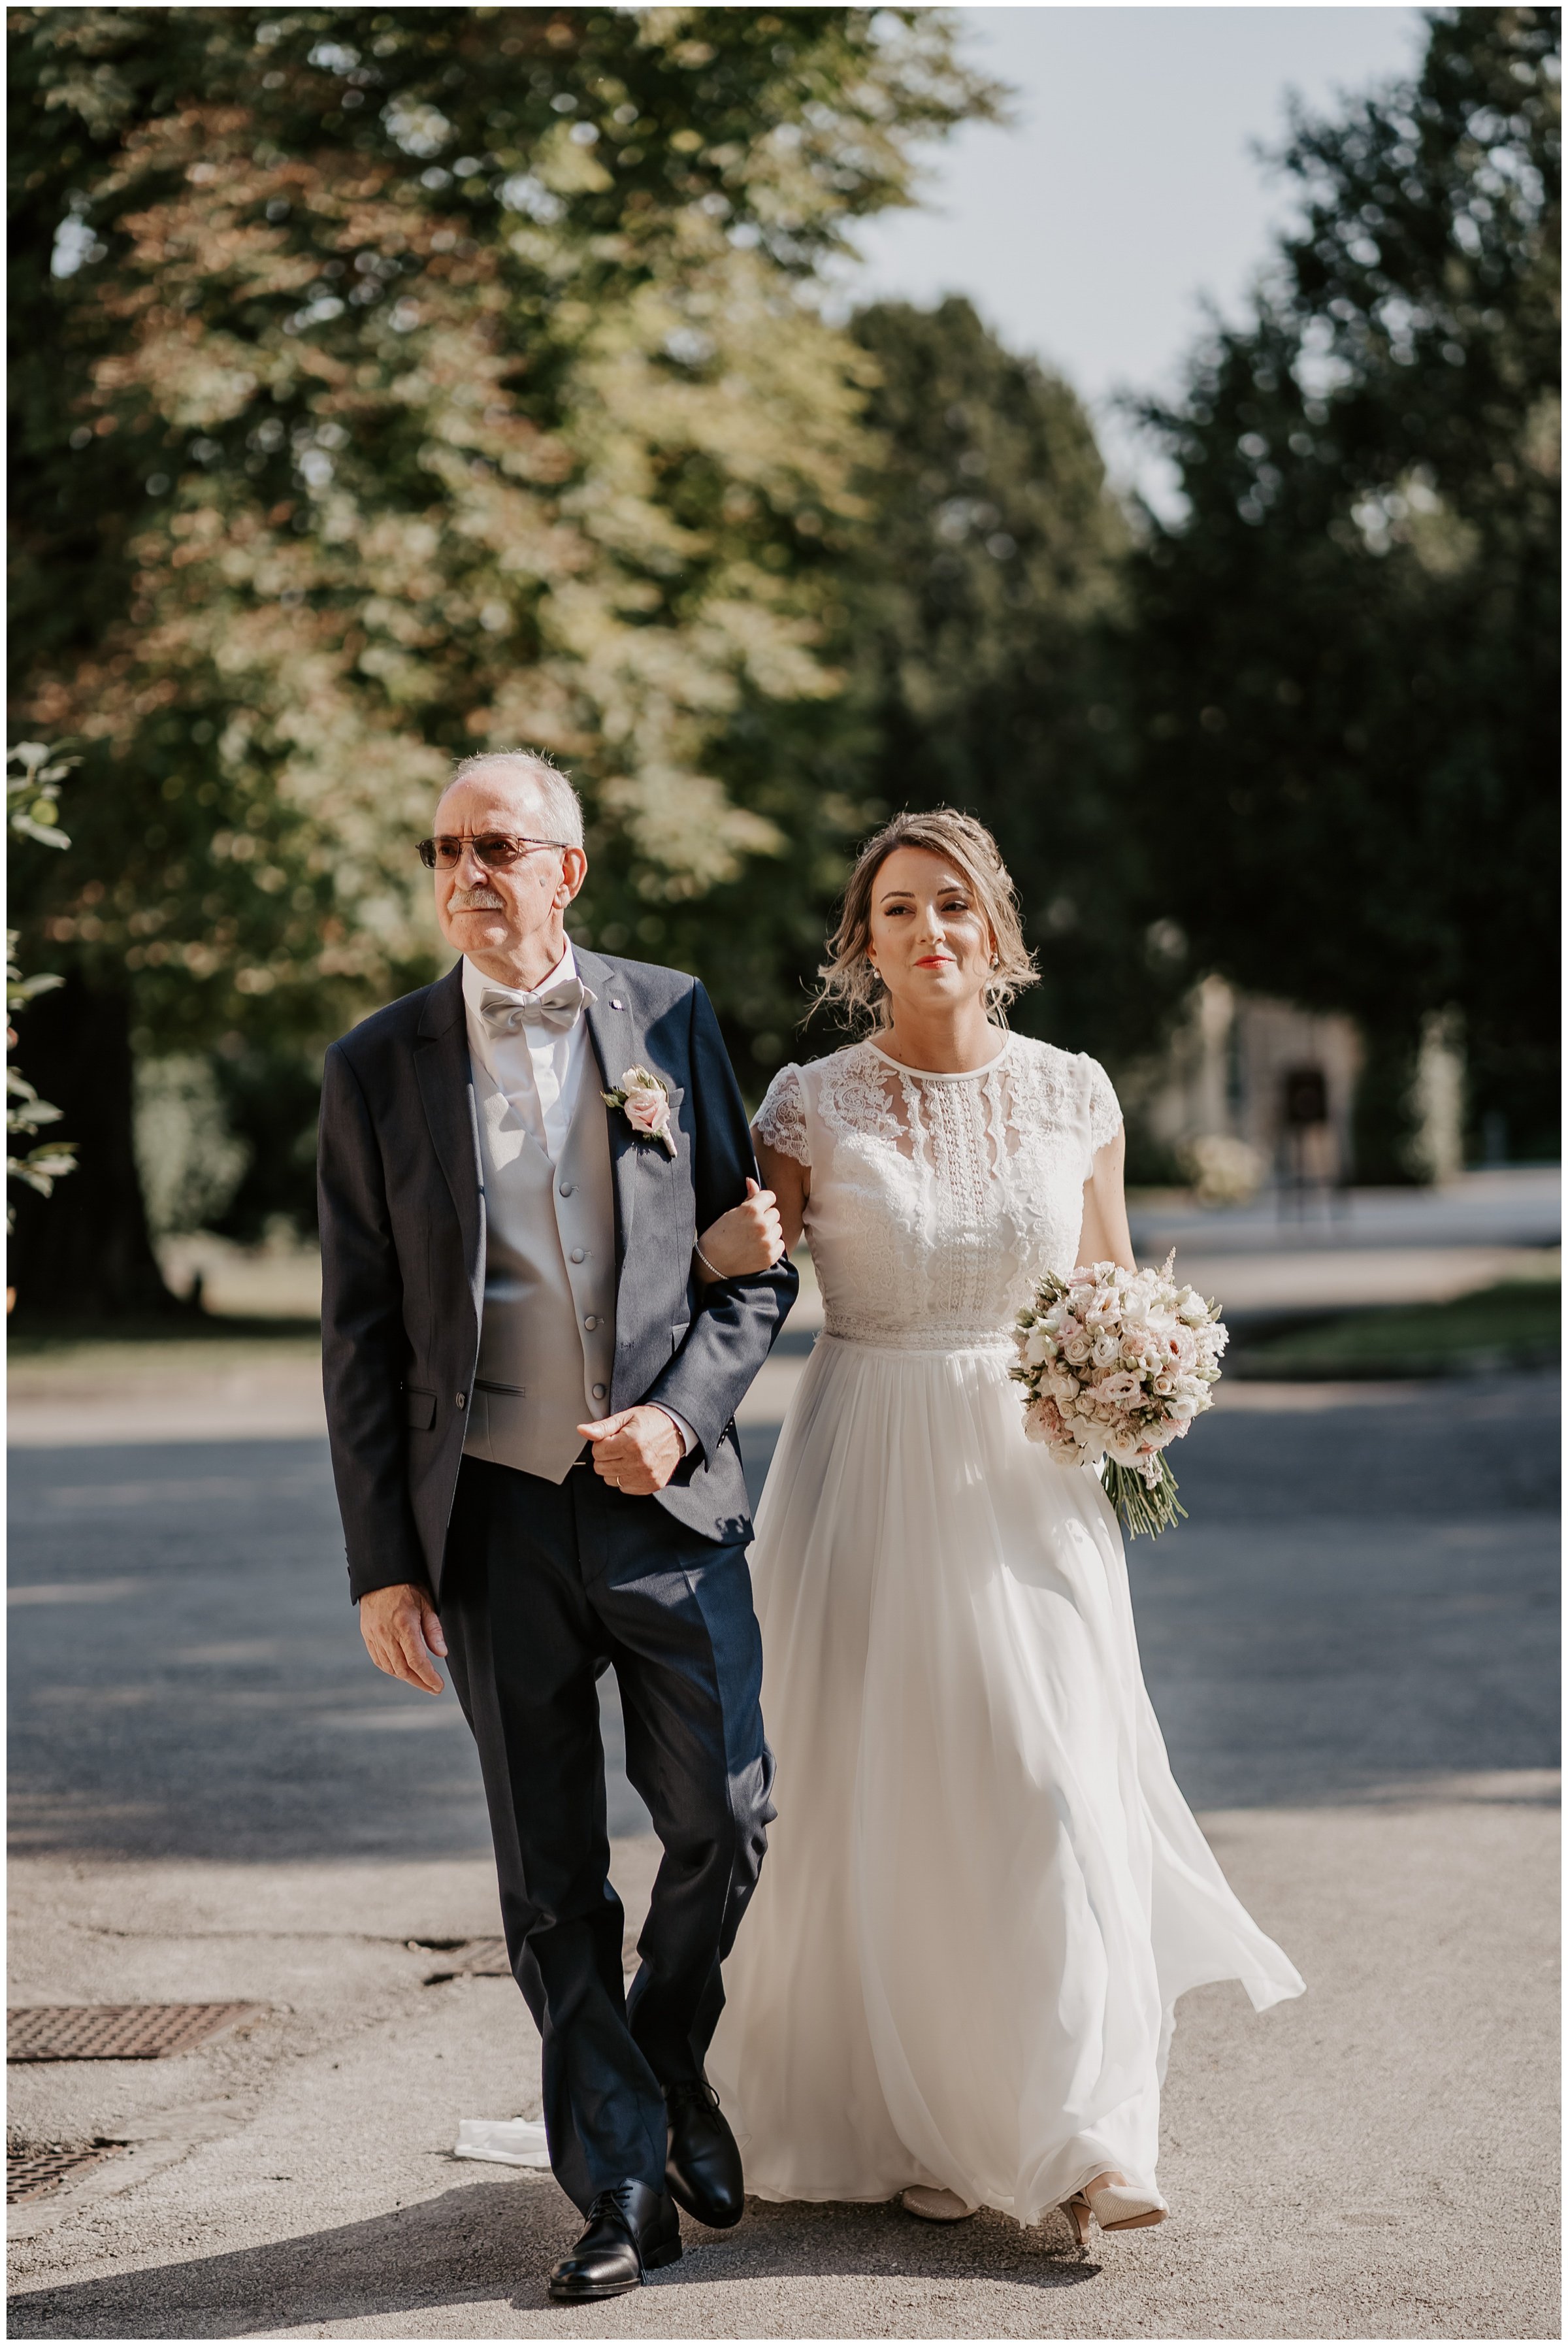 Matrimonio-villa-foscarini-cornaro-fotografo-matrimonio-treviso-fotografo-matrimonio-venezia-22.jpg